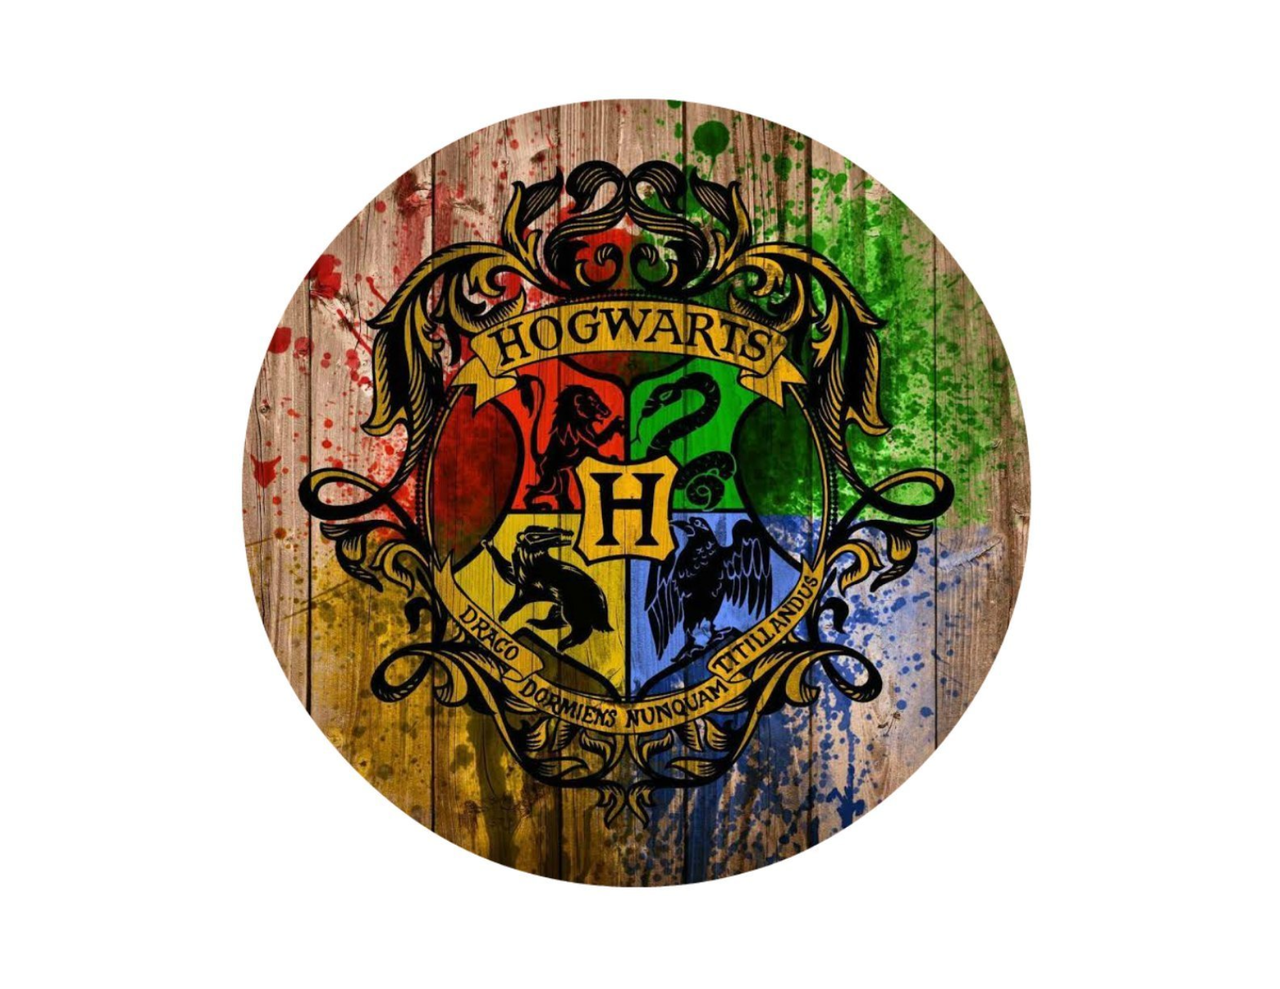 Harry Potter Hogwarts Logo on Wood Background Edible Icing Image 7.5 Round